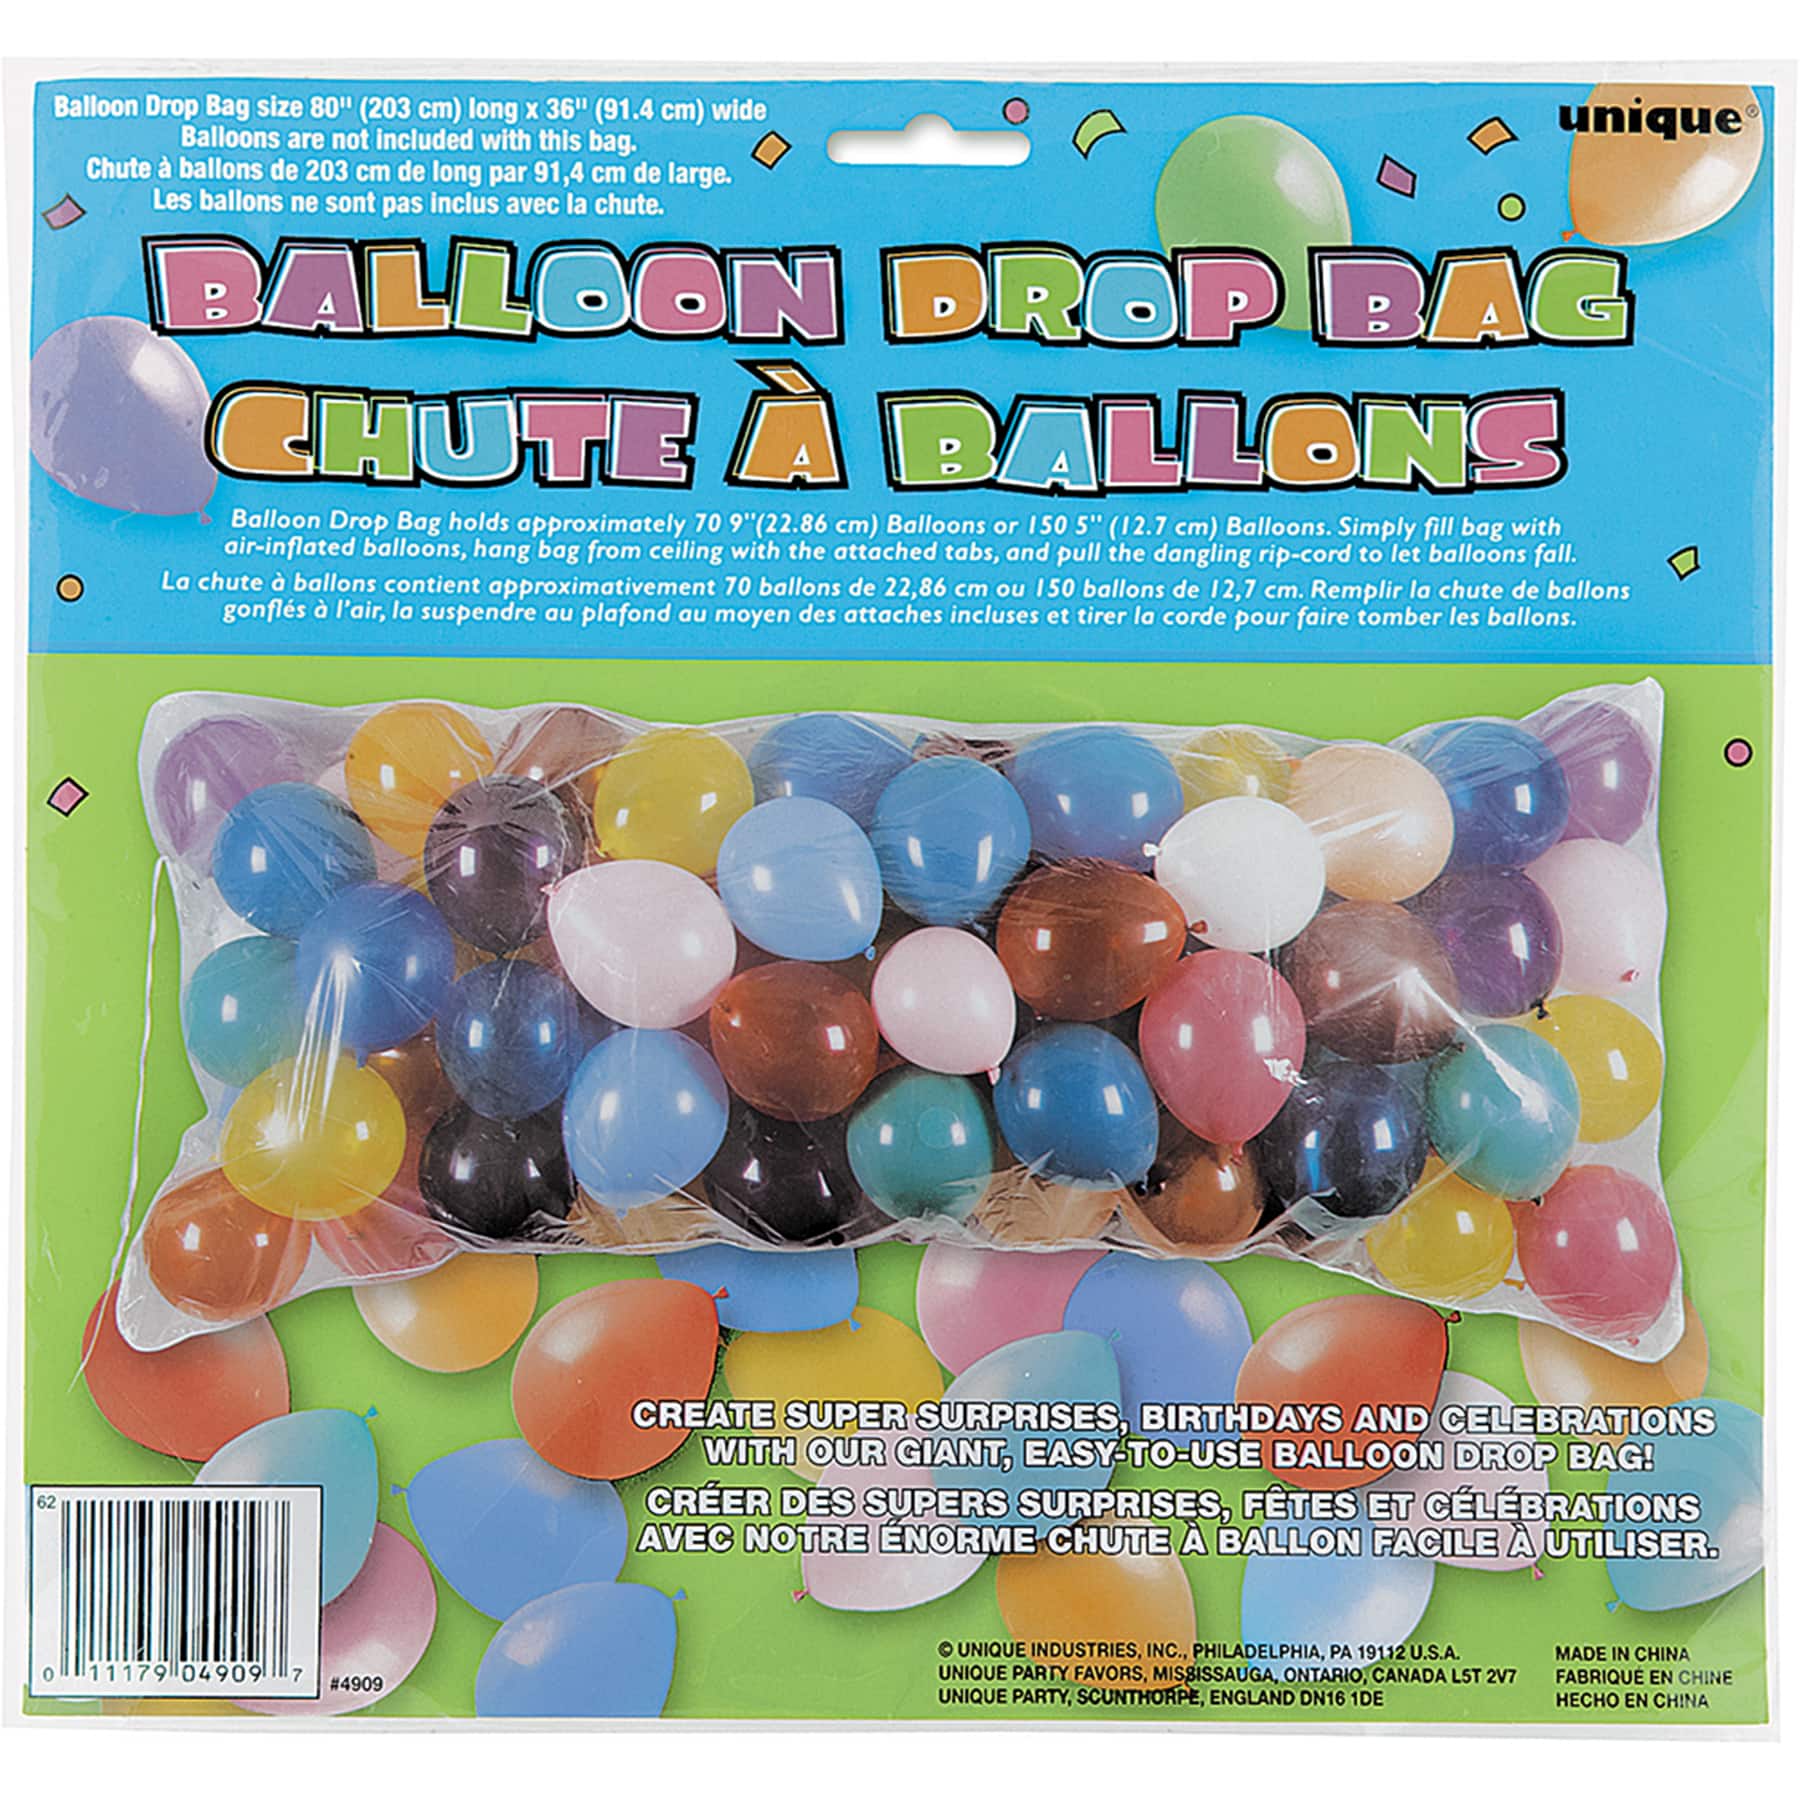 Balloon Drop Bag Birthday Party Supplies